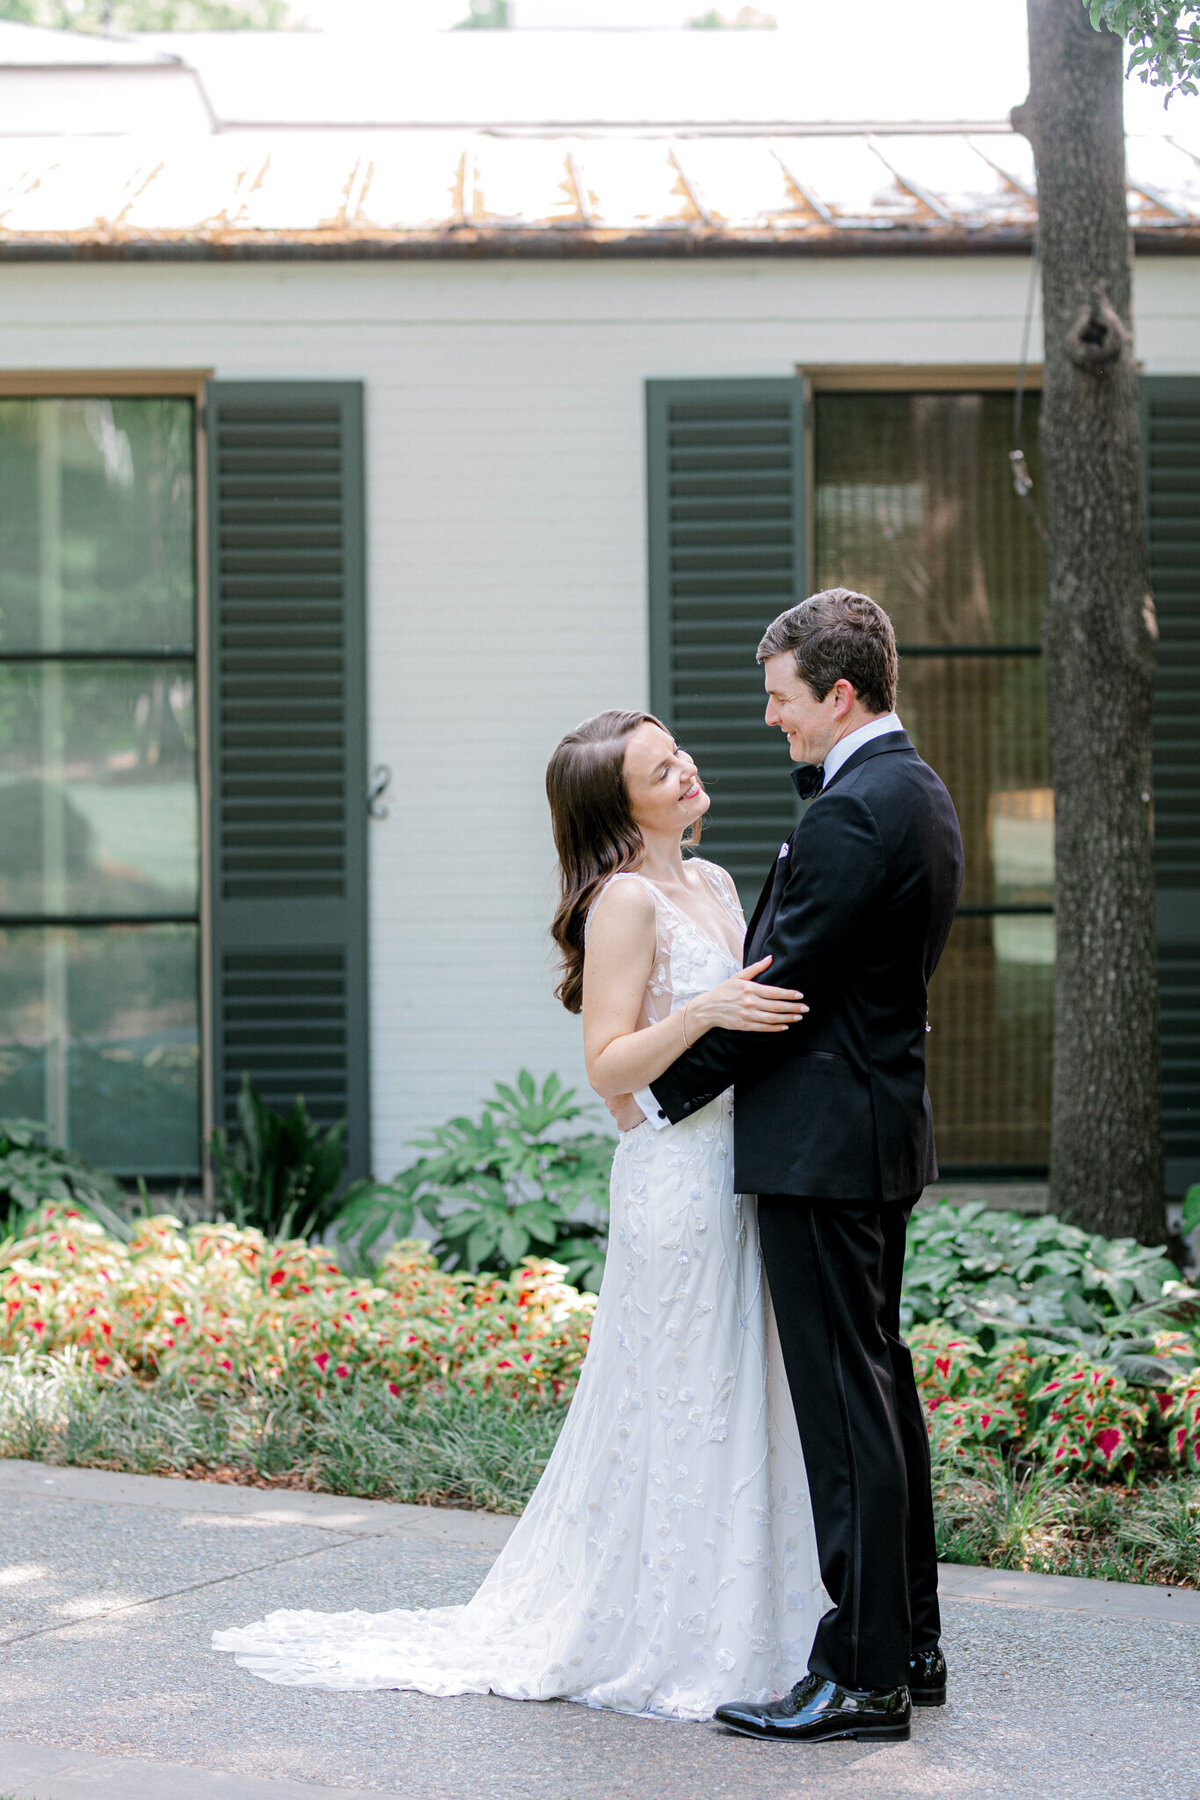 Gena & Matt's Wedding at the Dallas Arboretum | Dallas Wedding Photographer | Sami Kathryn Photography-85